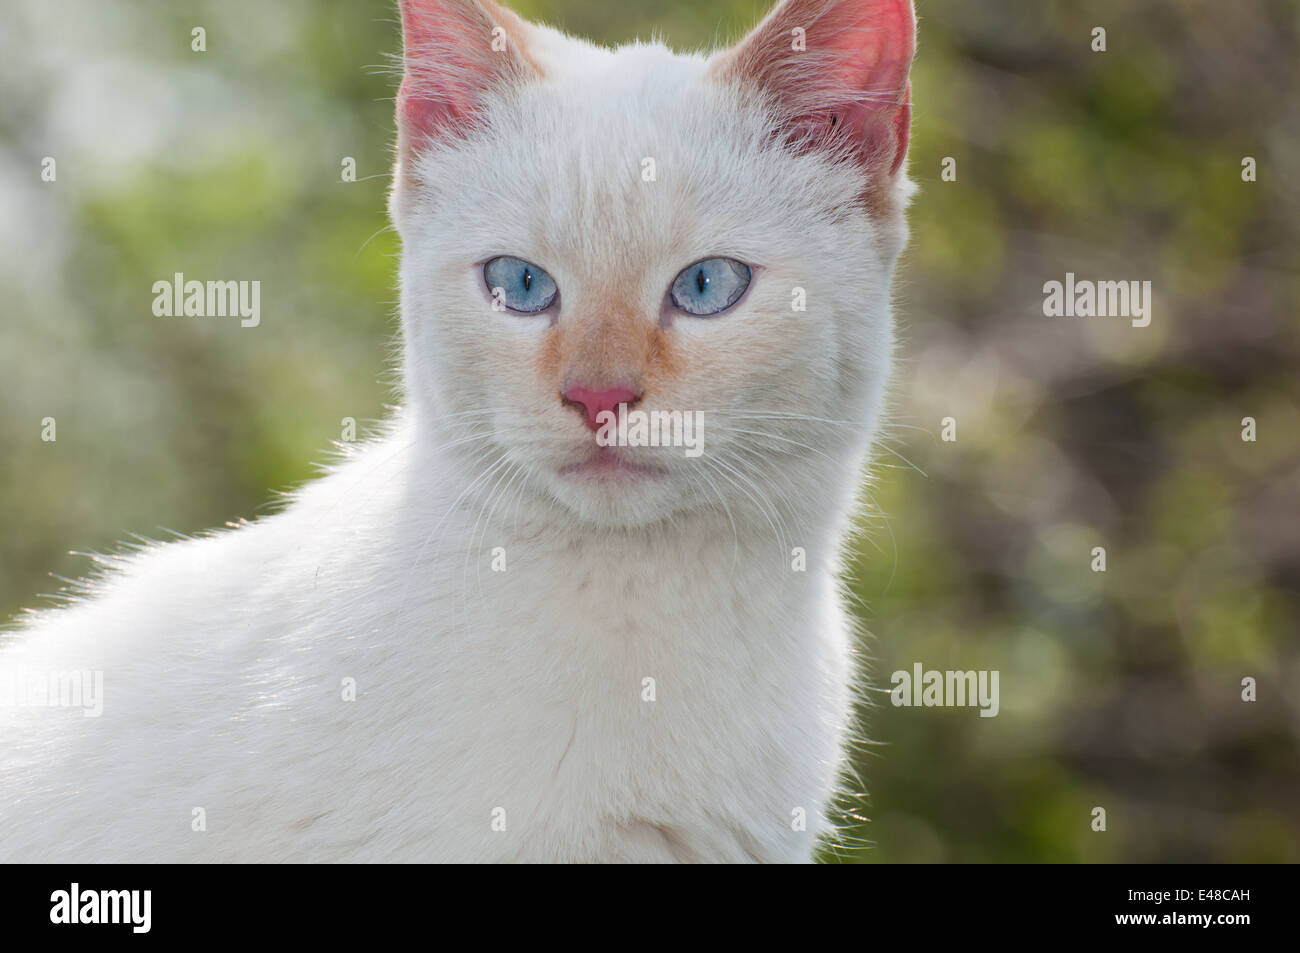 Un animal poilu blanc portrait chat animal nature jardin bleu en plein air les jeunes adultes cheveux visage yeux personne mars Banque D'Images